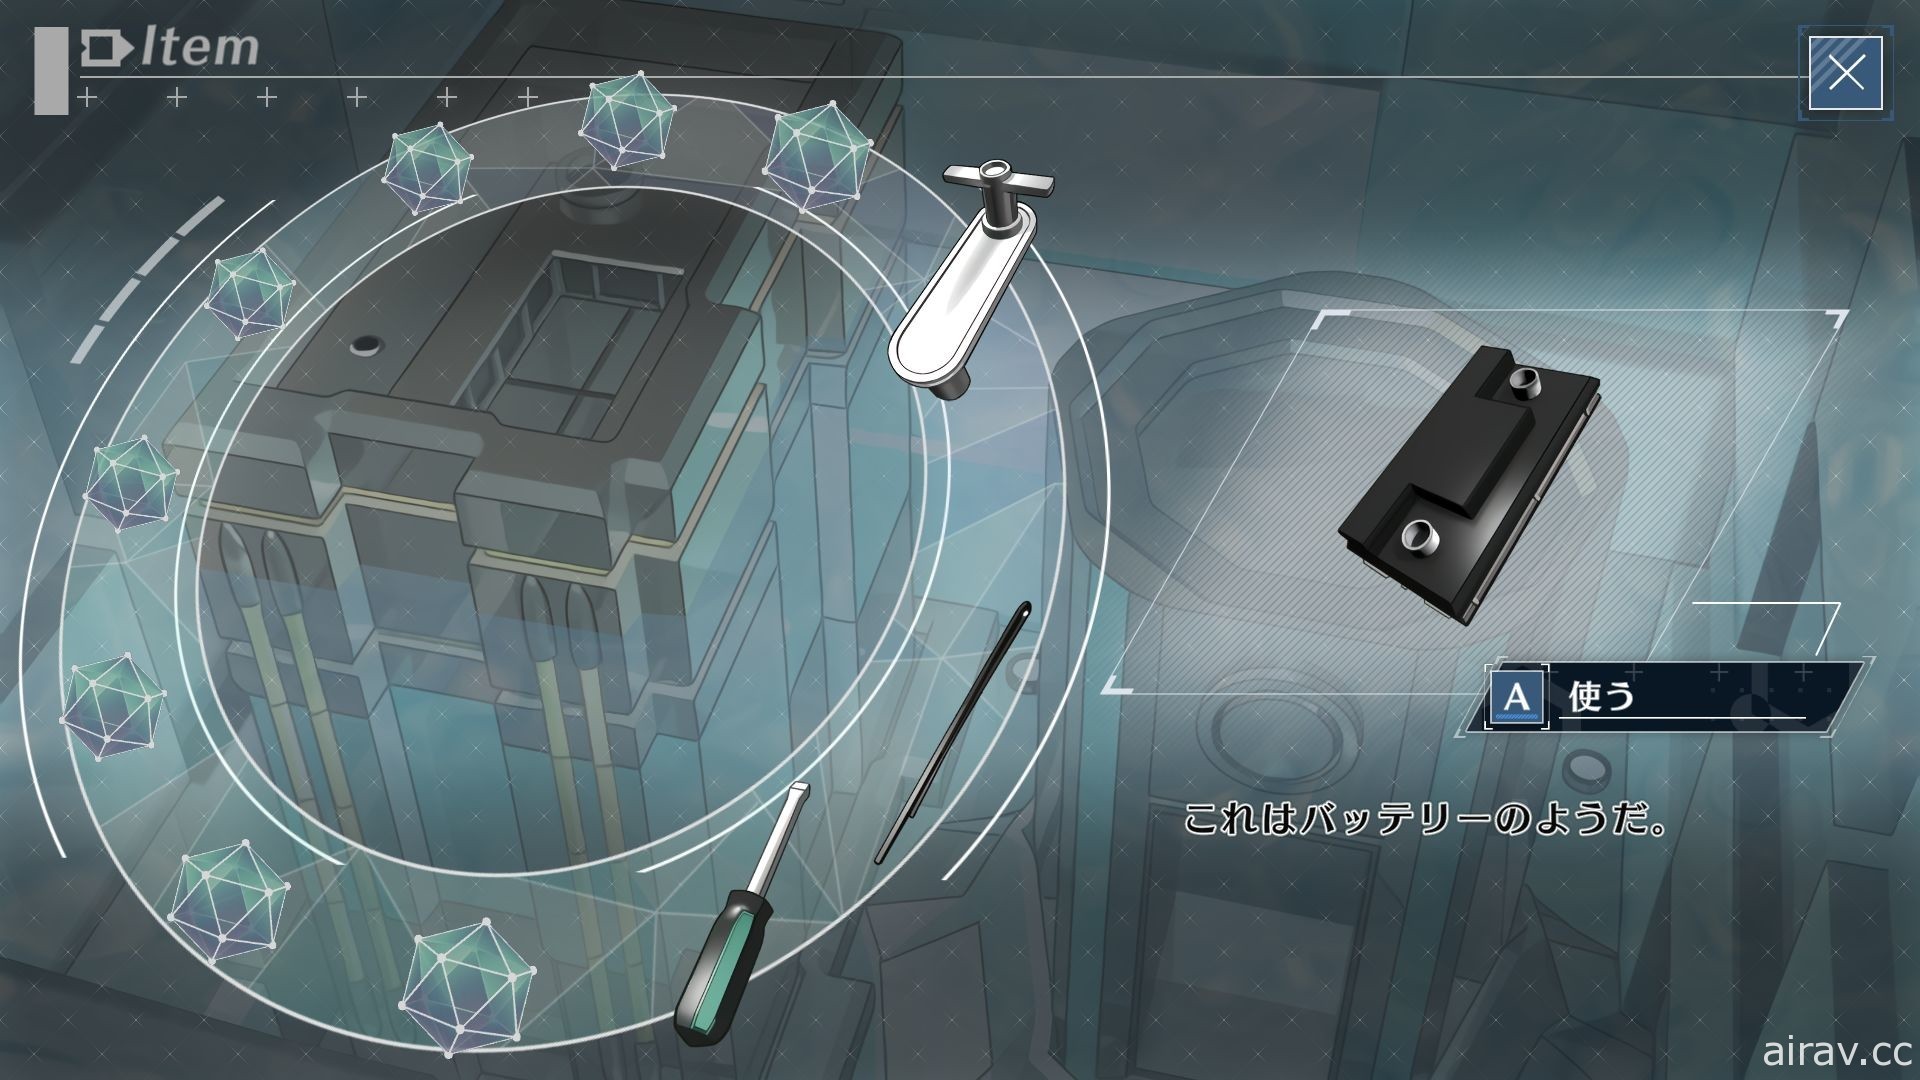 以 PSP 版為基礎移植之新作《密室犧牲者》12 月中發售 新增提示功能、畫廊模式